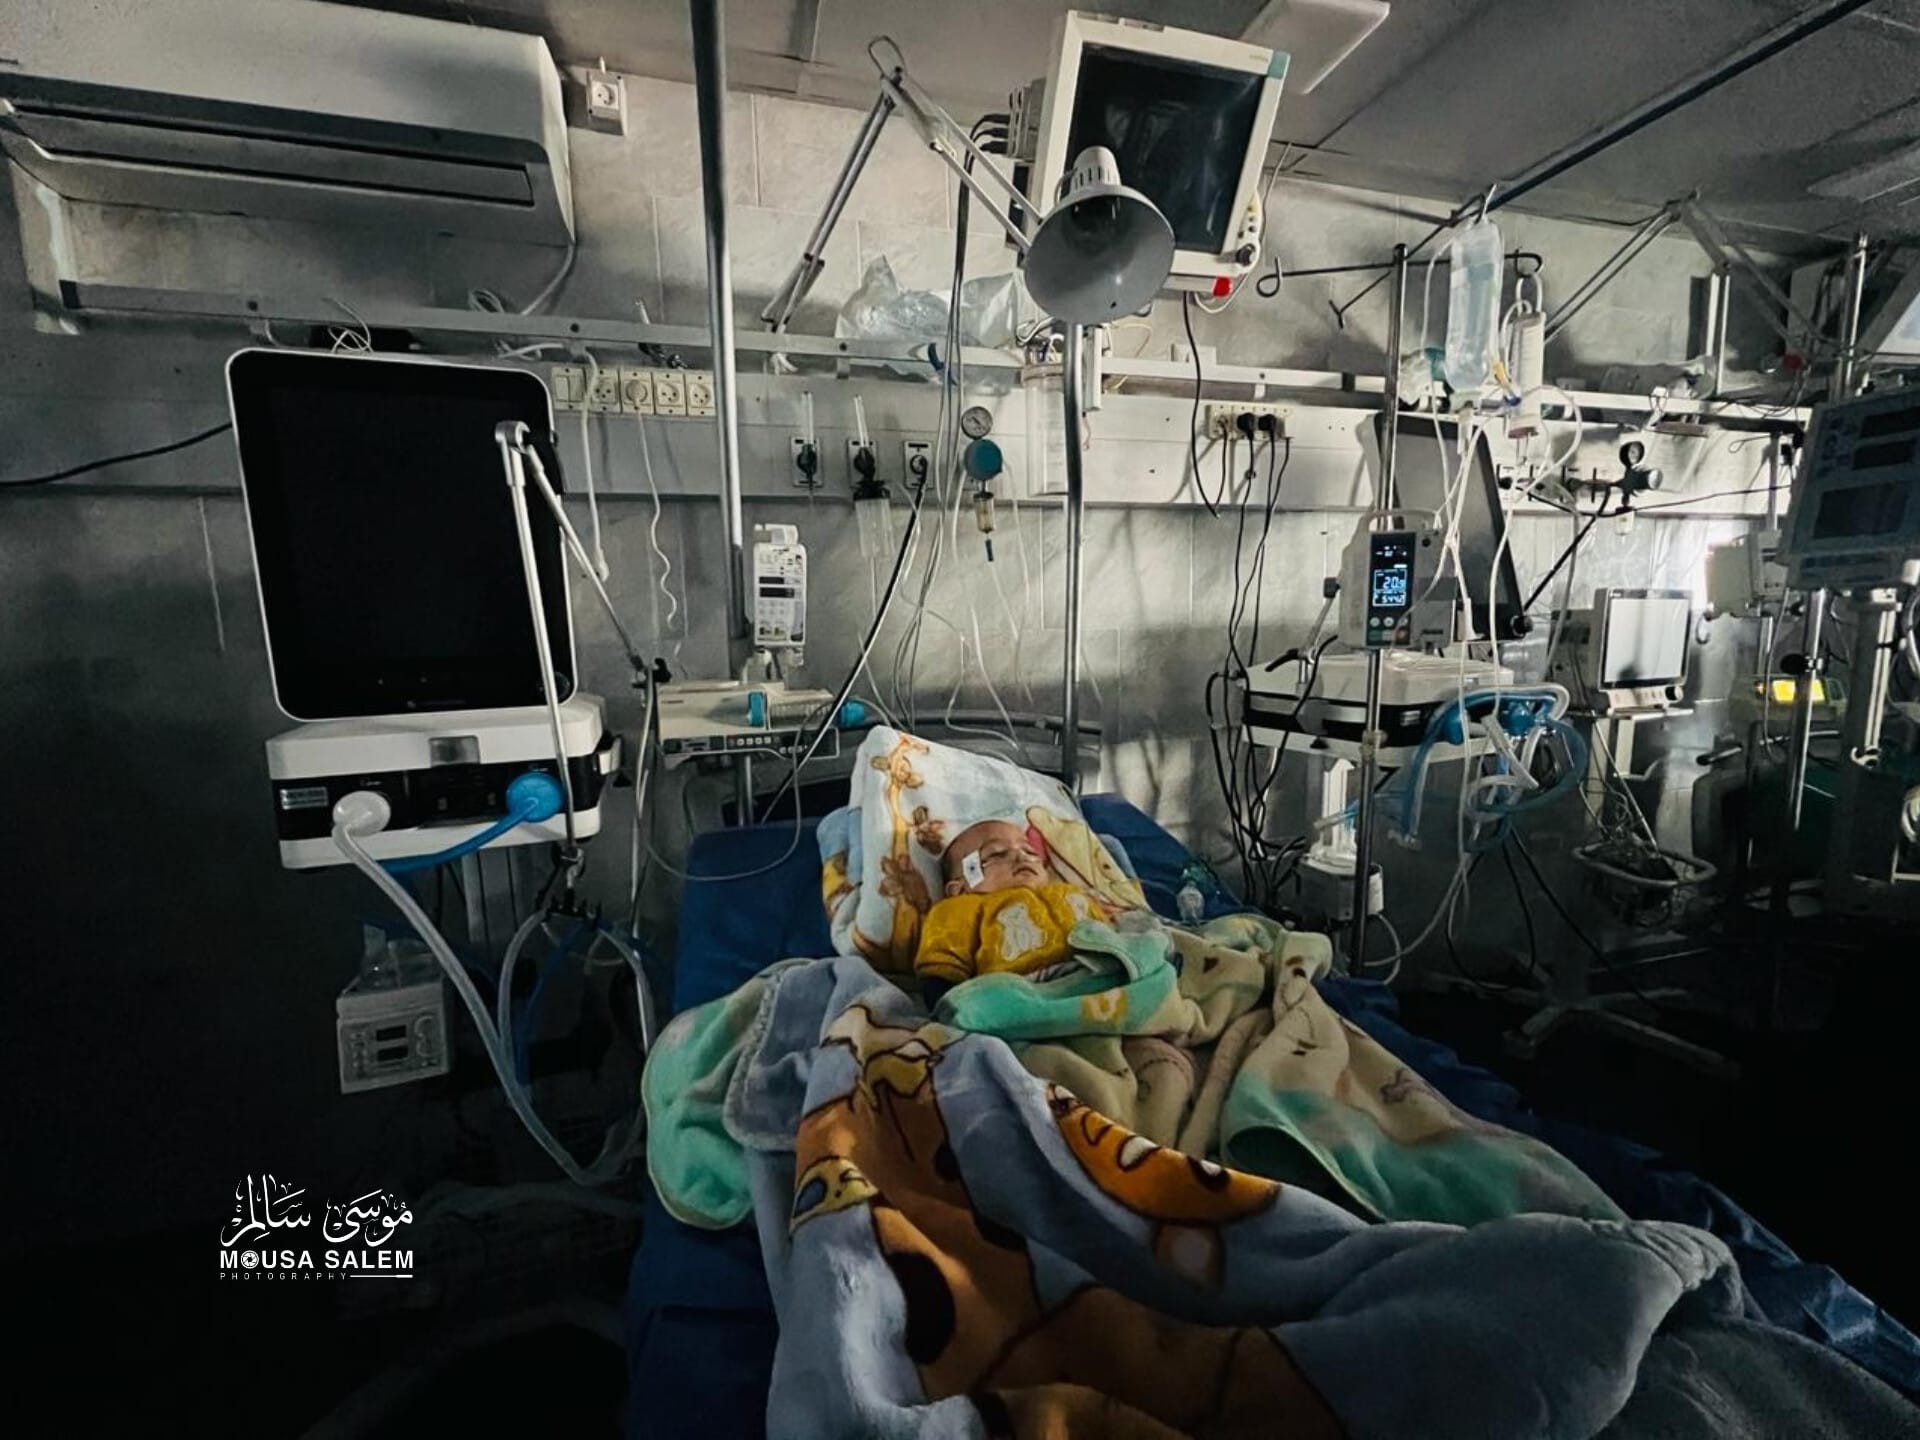 الصحة تطلق نداء استغاثة لتوفير مولدات كهربائية لمستشفيات غزة